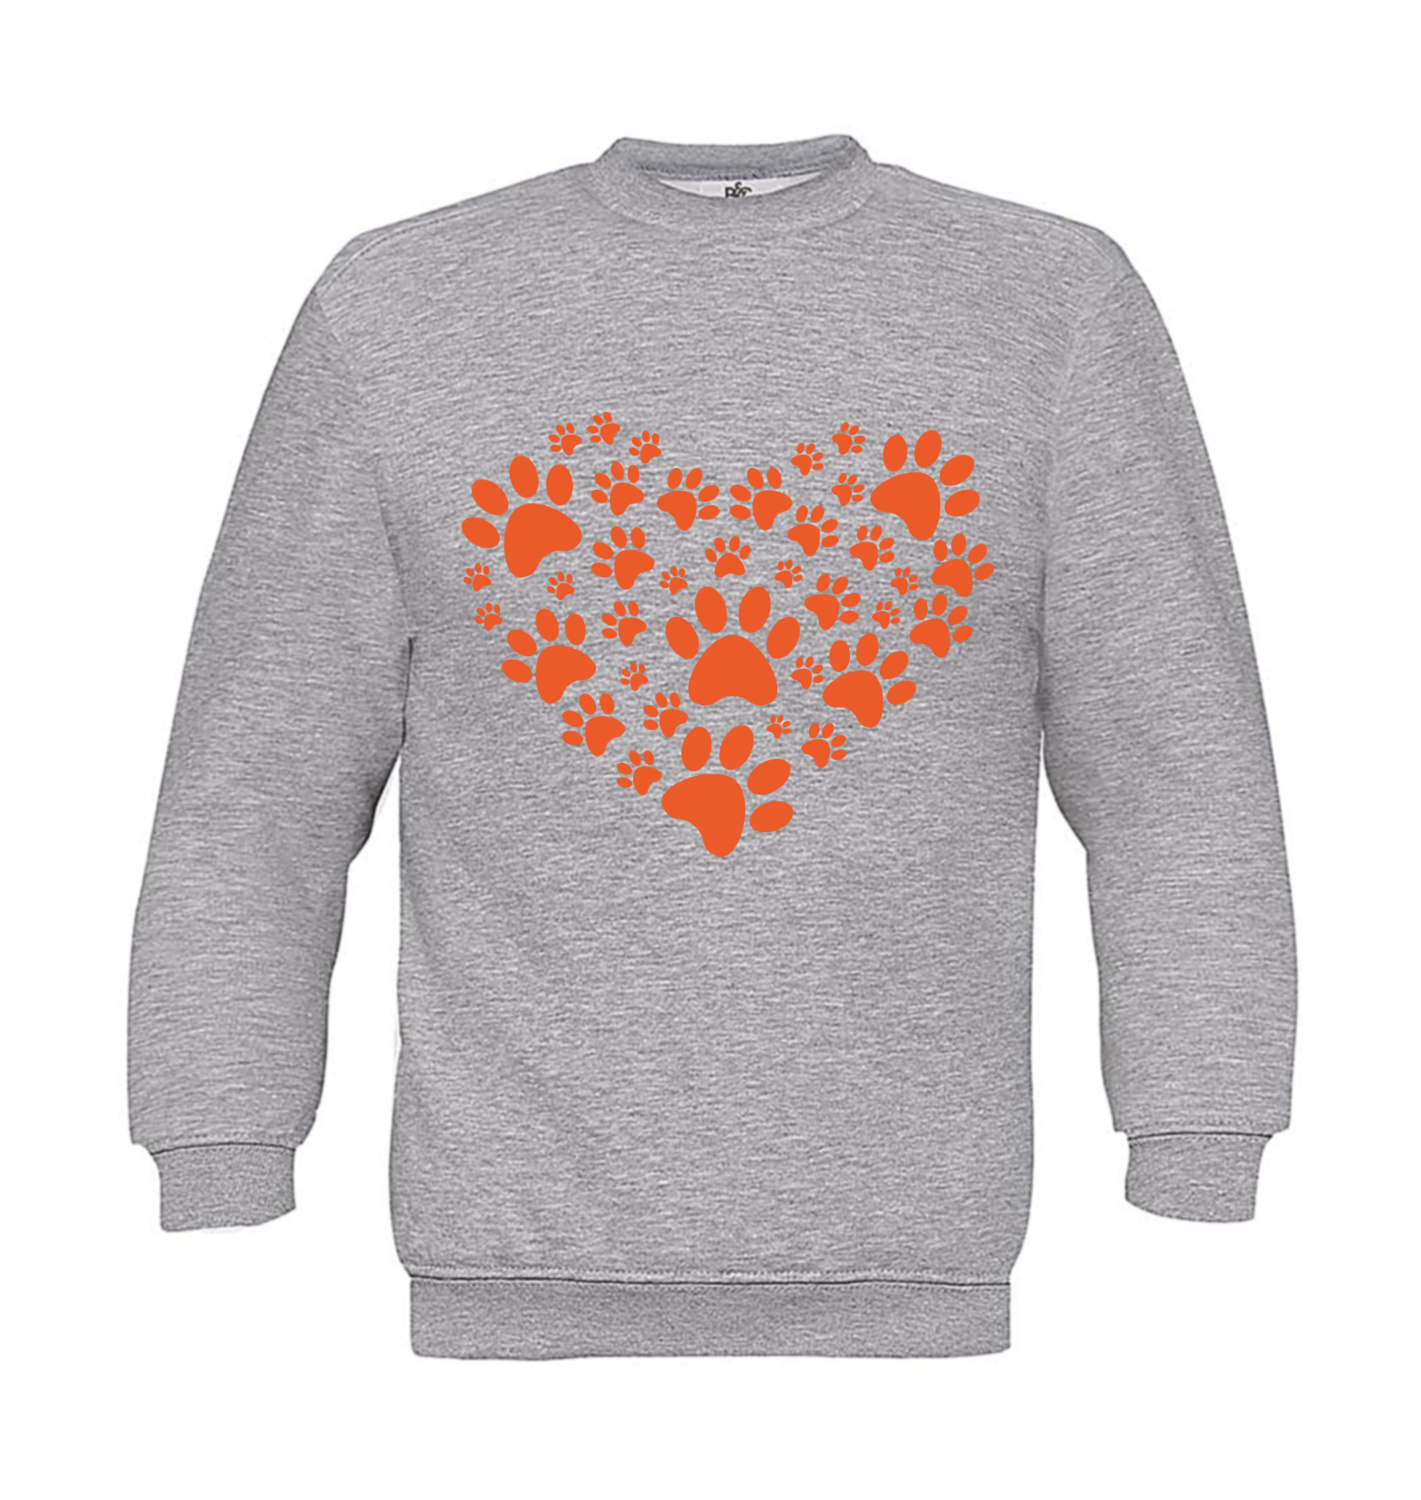 Sweatshirt Kinder Hunde - Herz aus Hundepfoten